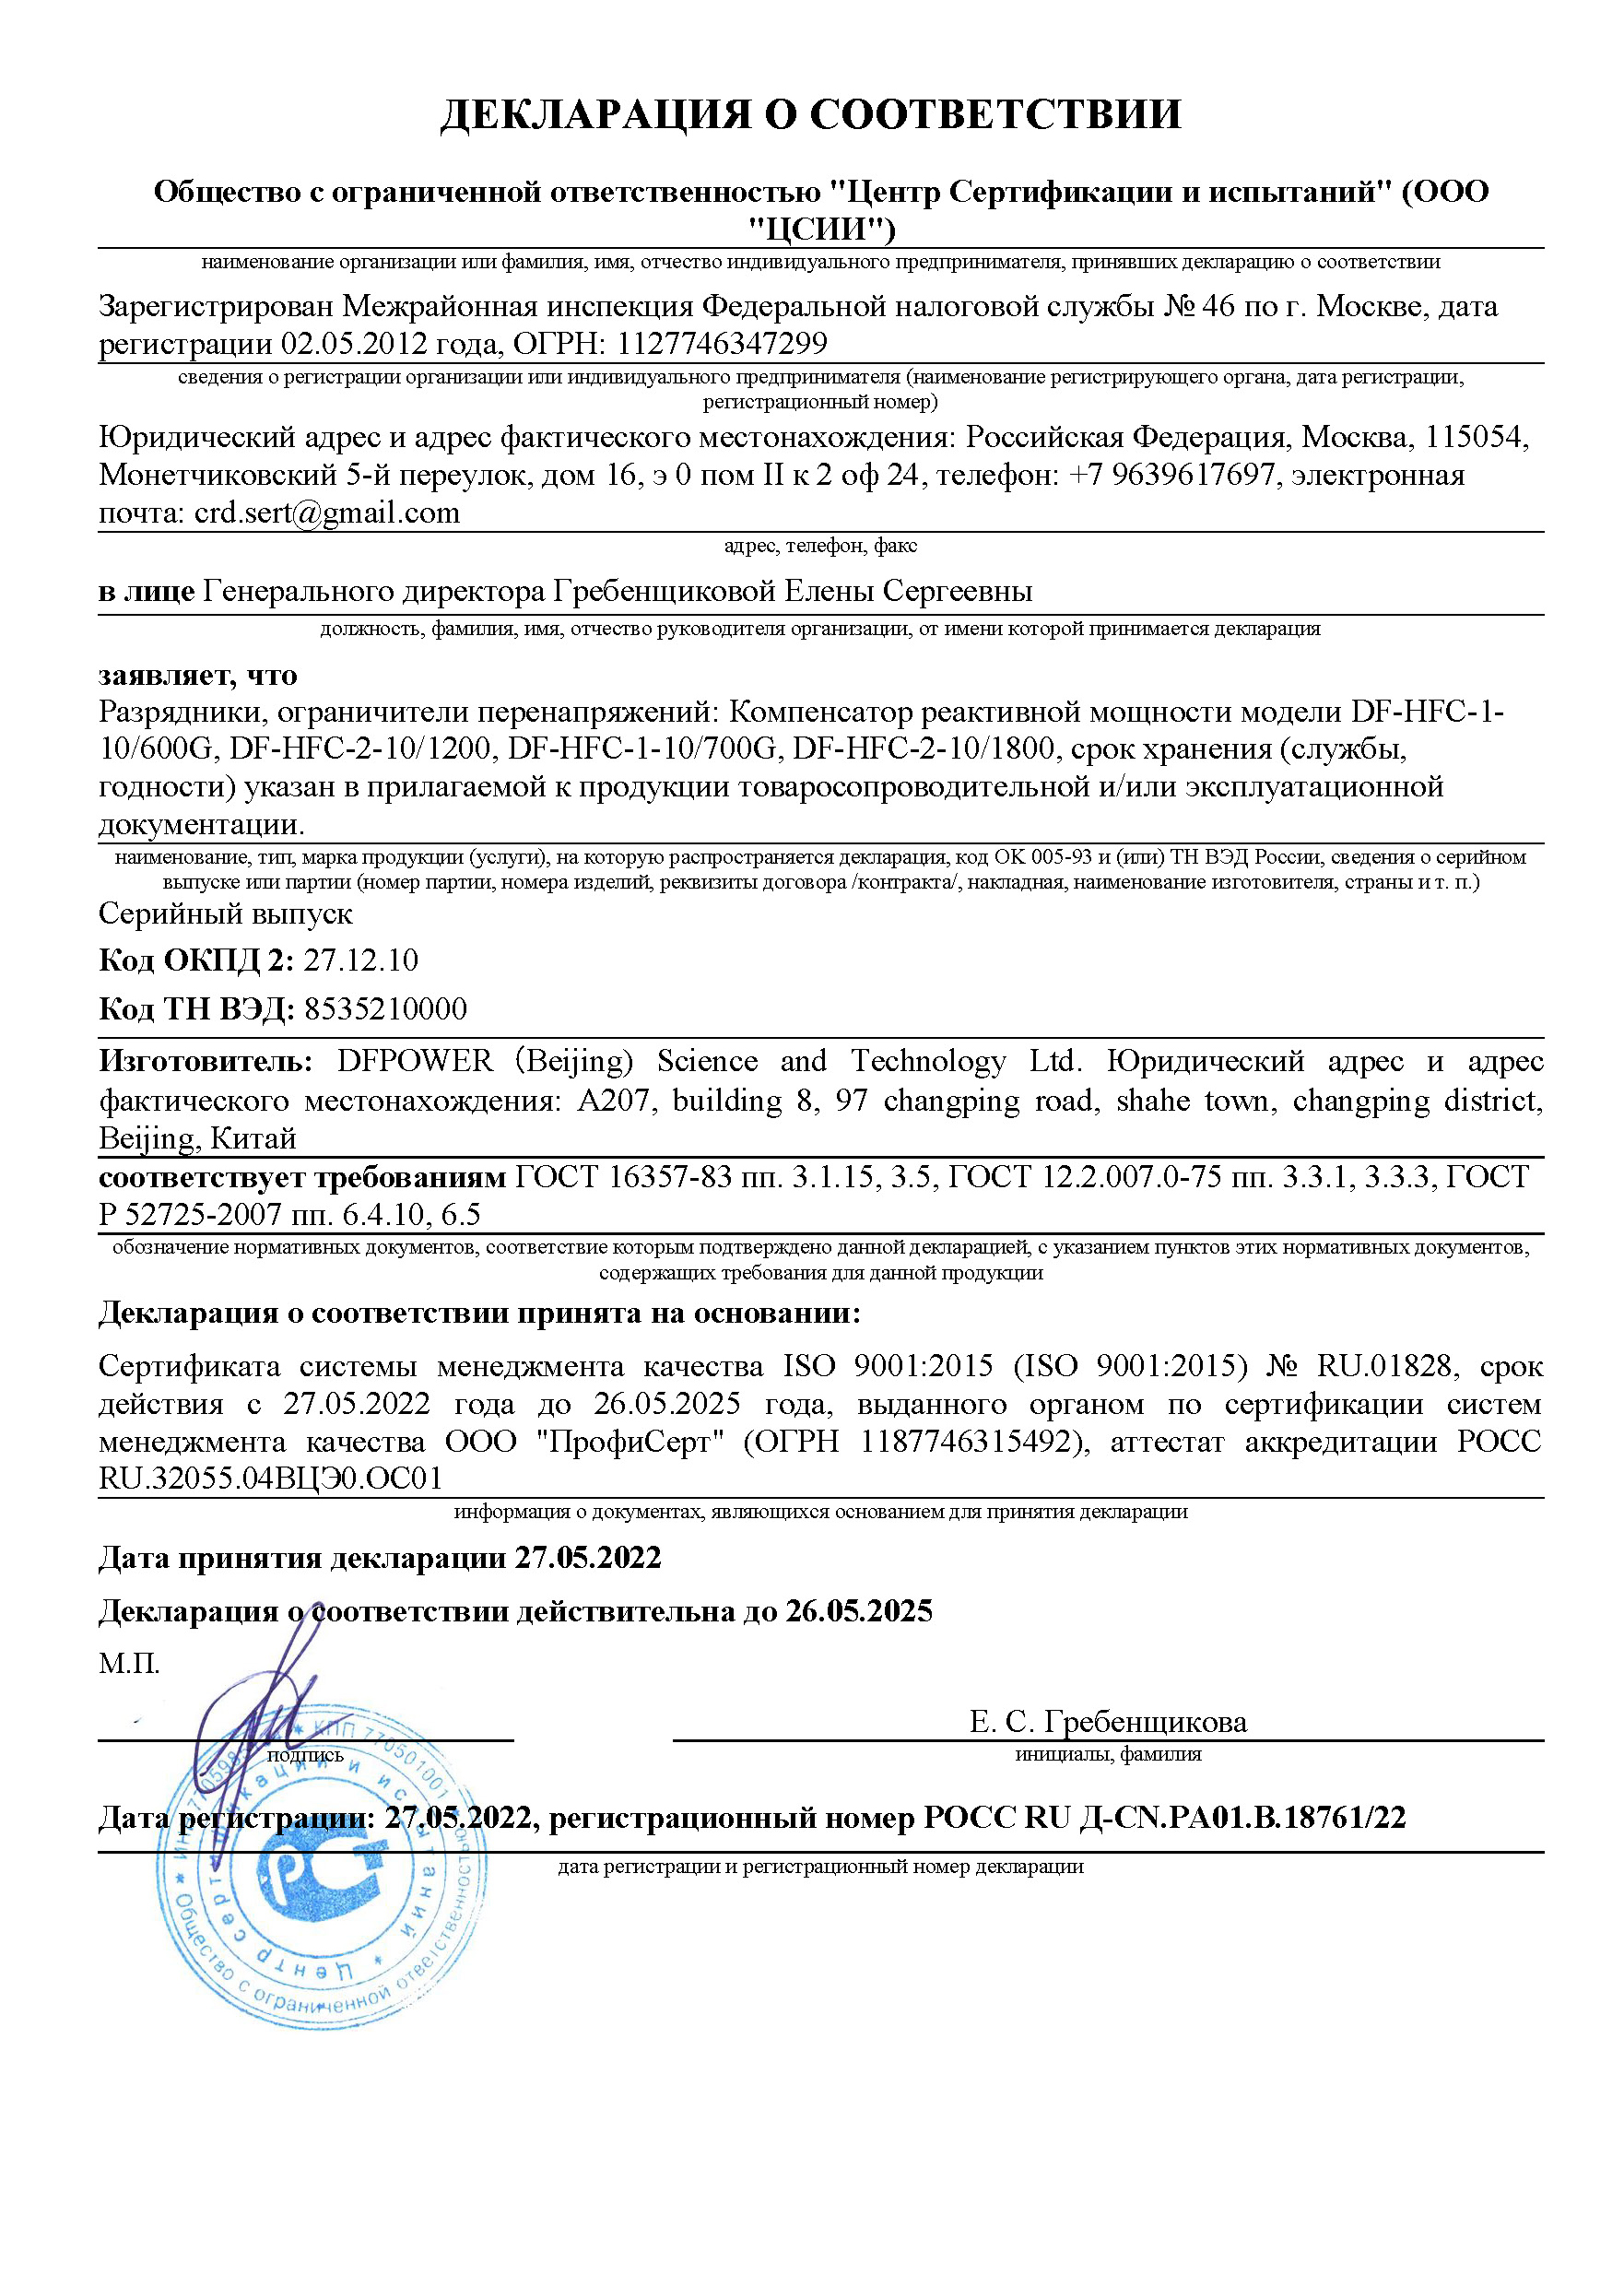 俄罗斯GOST强制认证证书